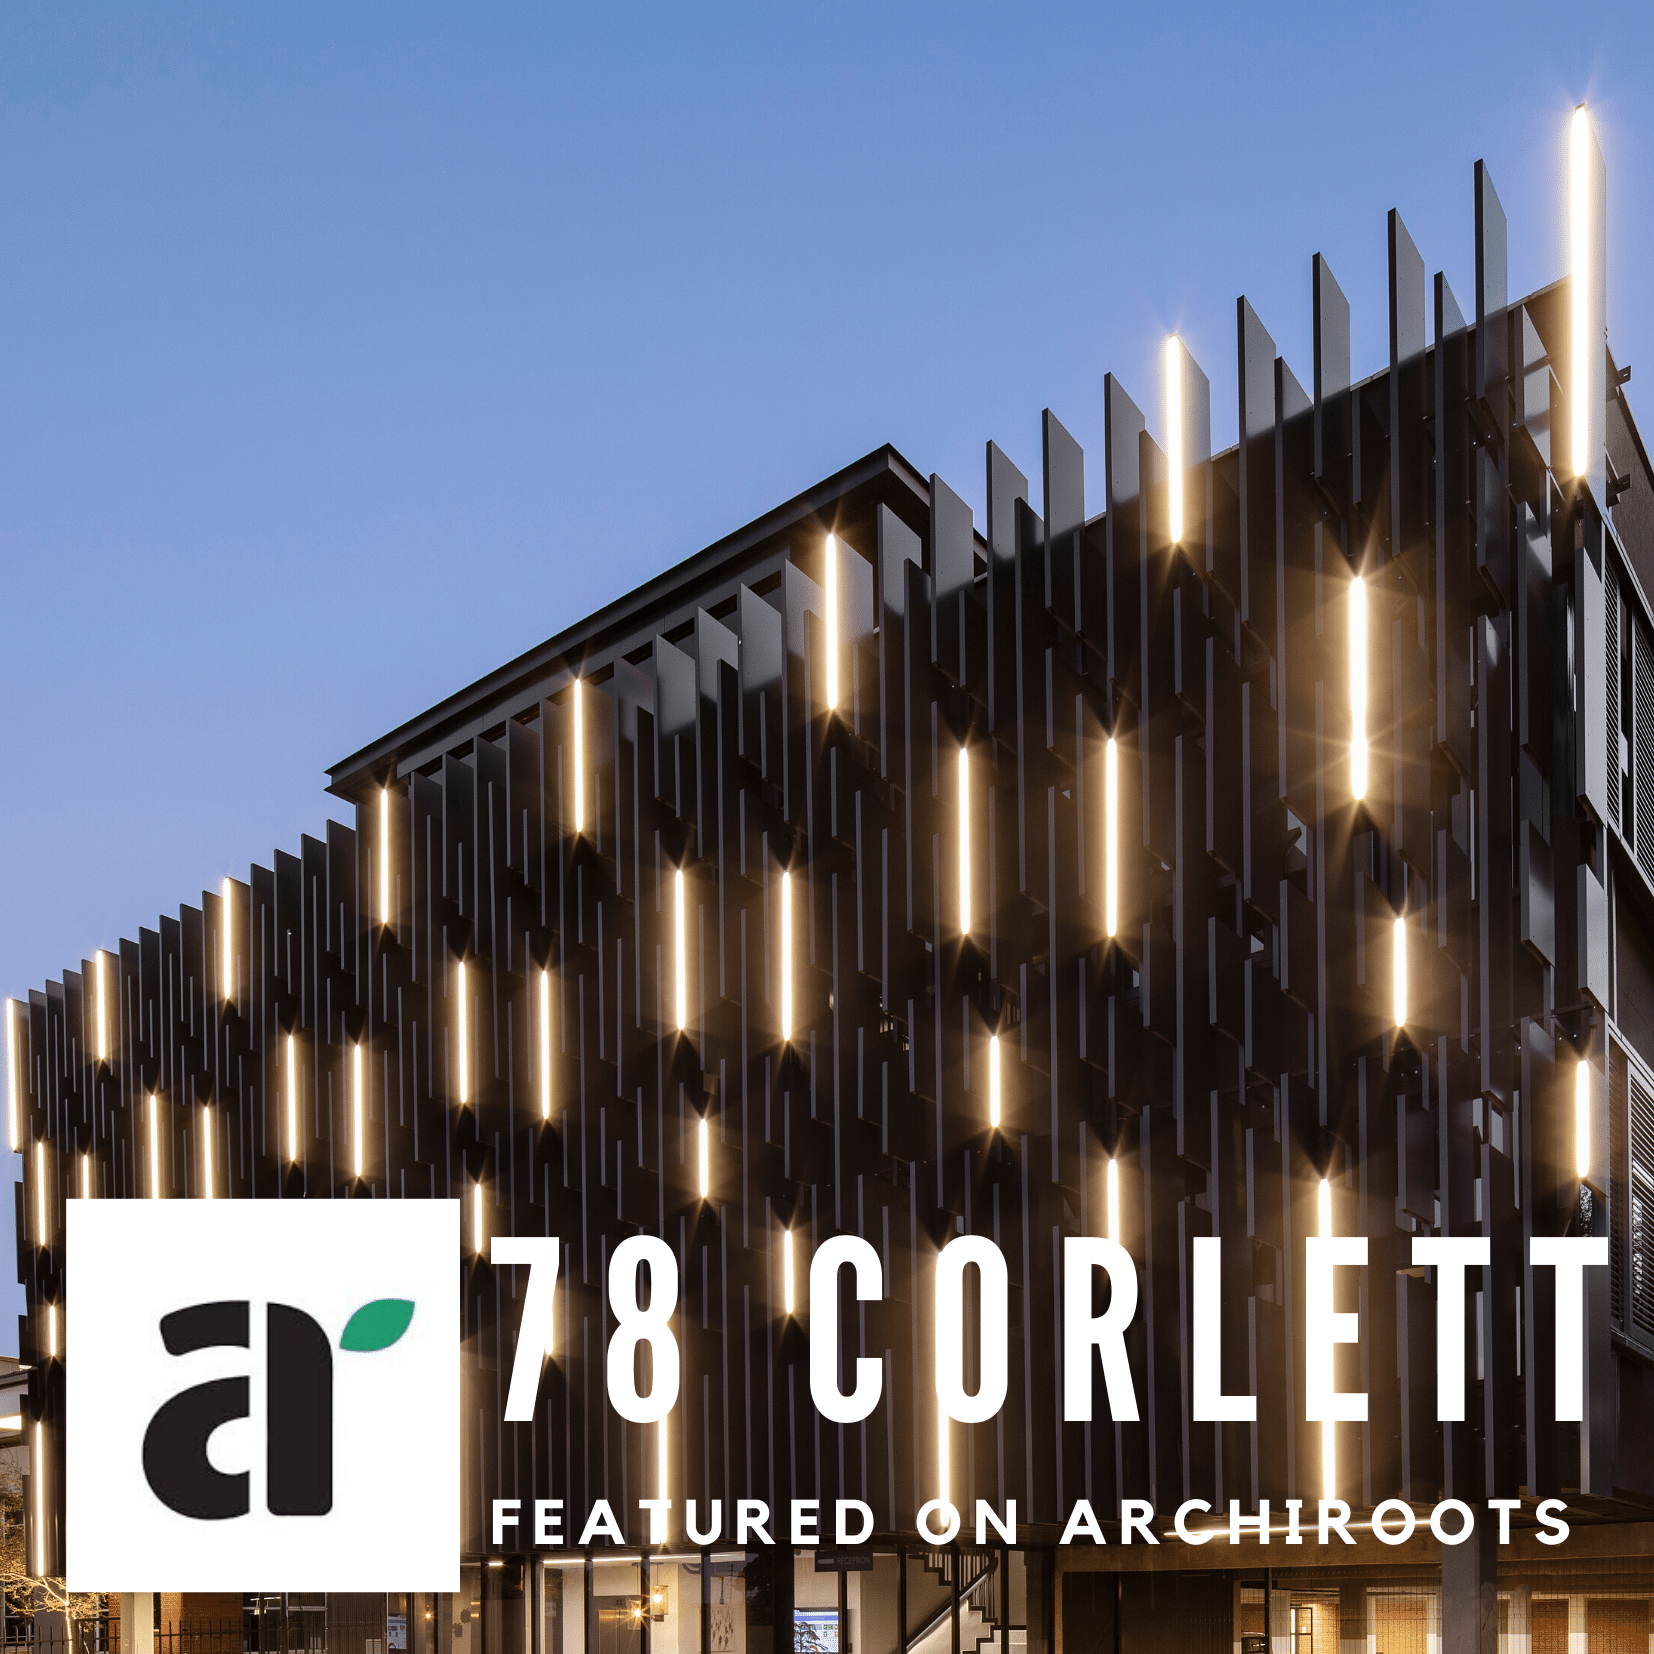 78 Corlett featured on Archiroots